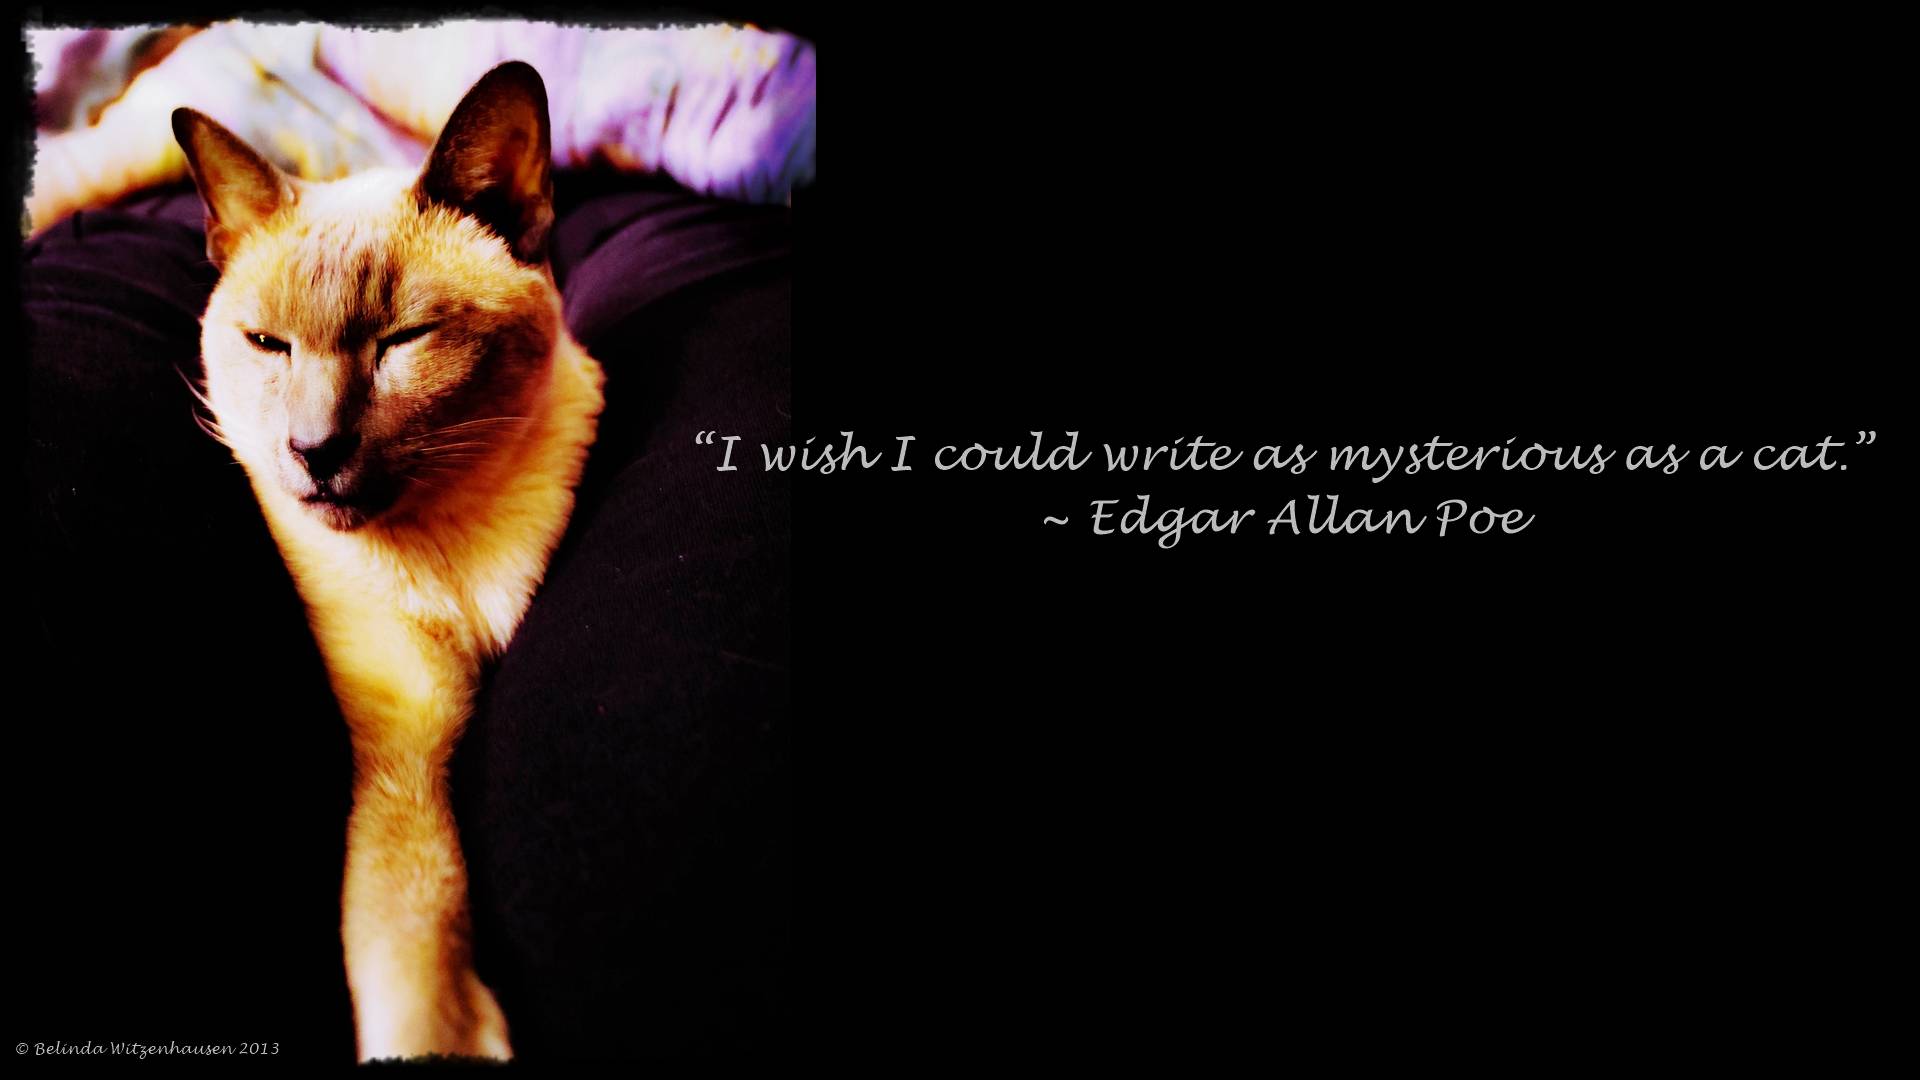 Edgar Allan Poe Love Quotes. QuotesGram